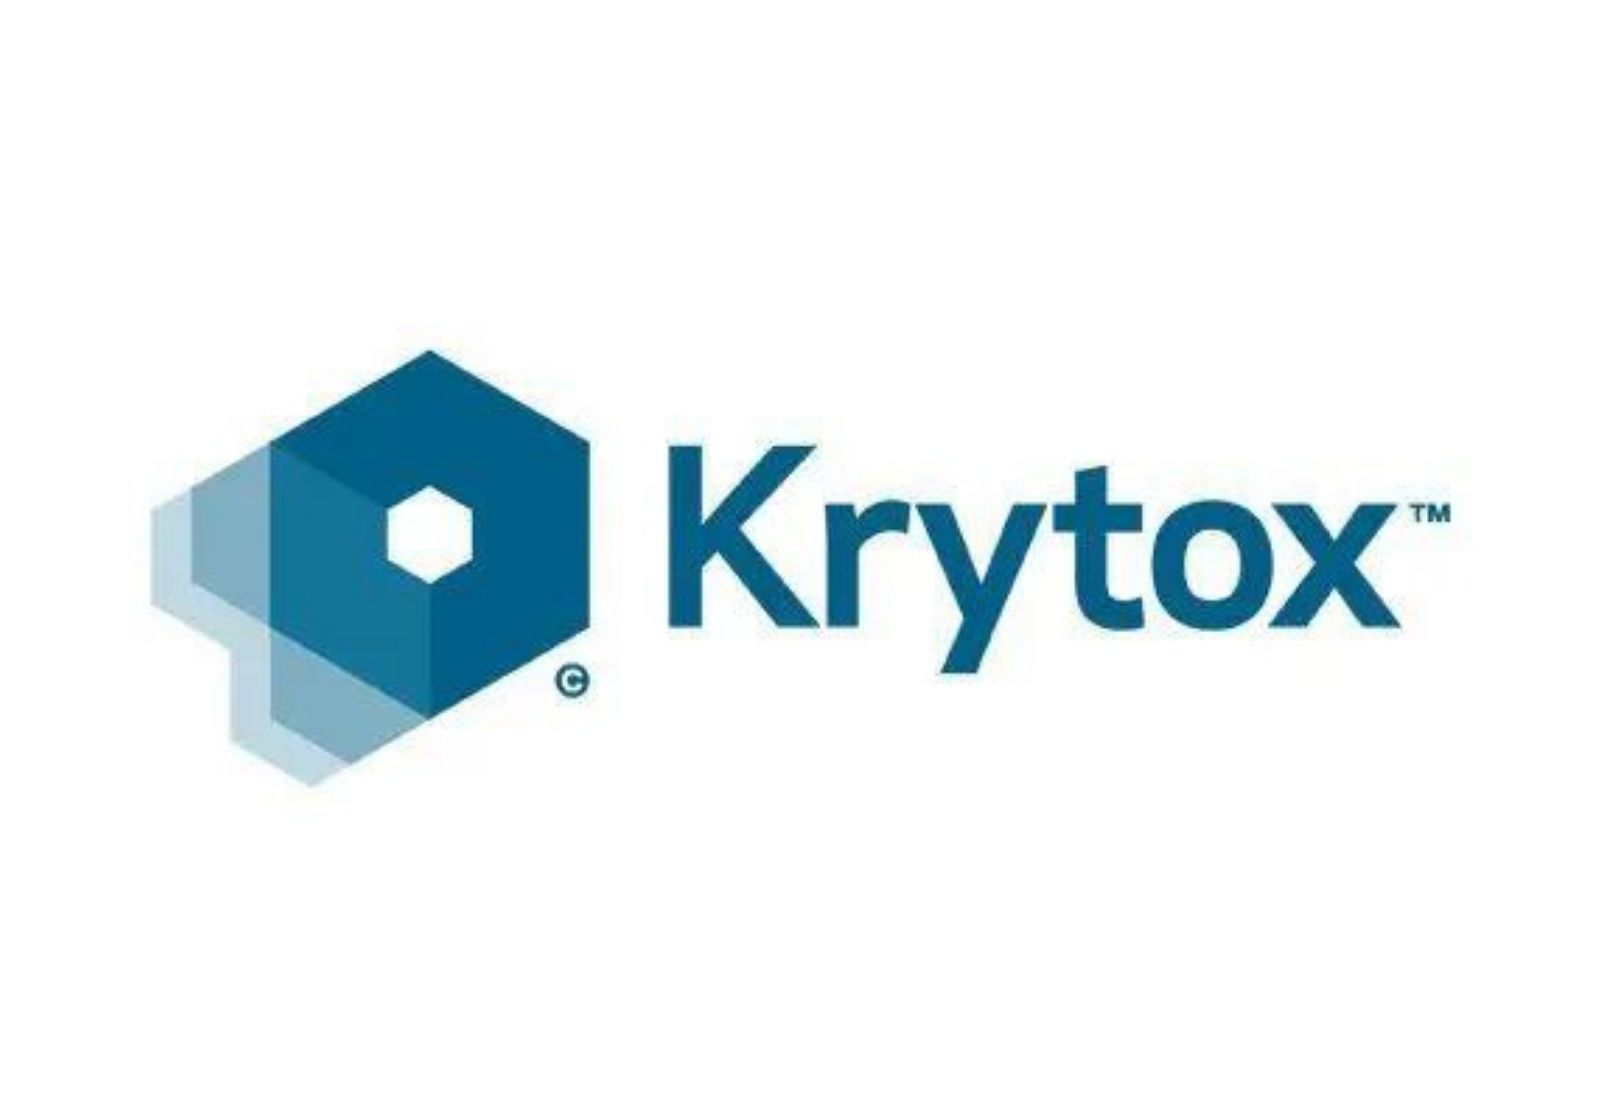 Krytox